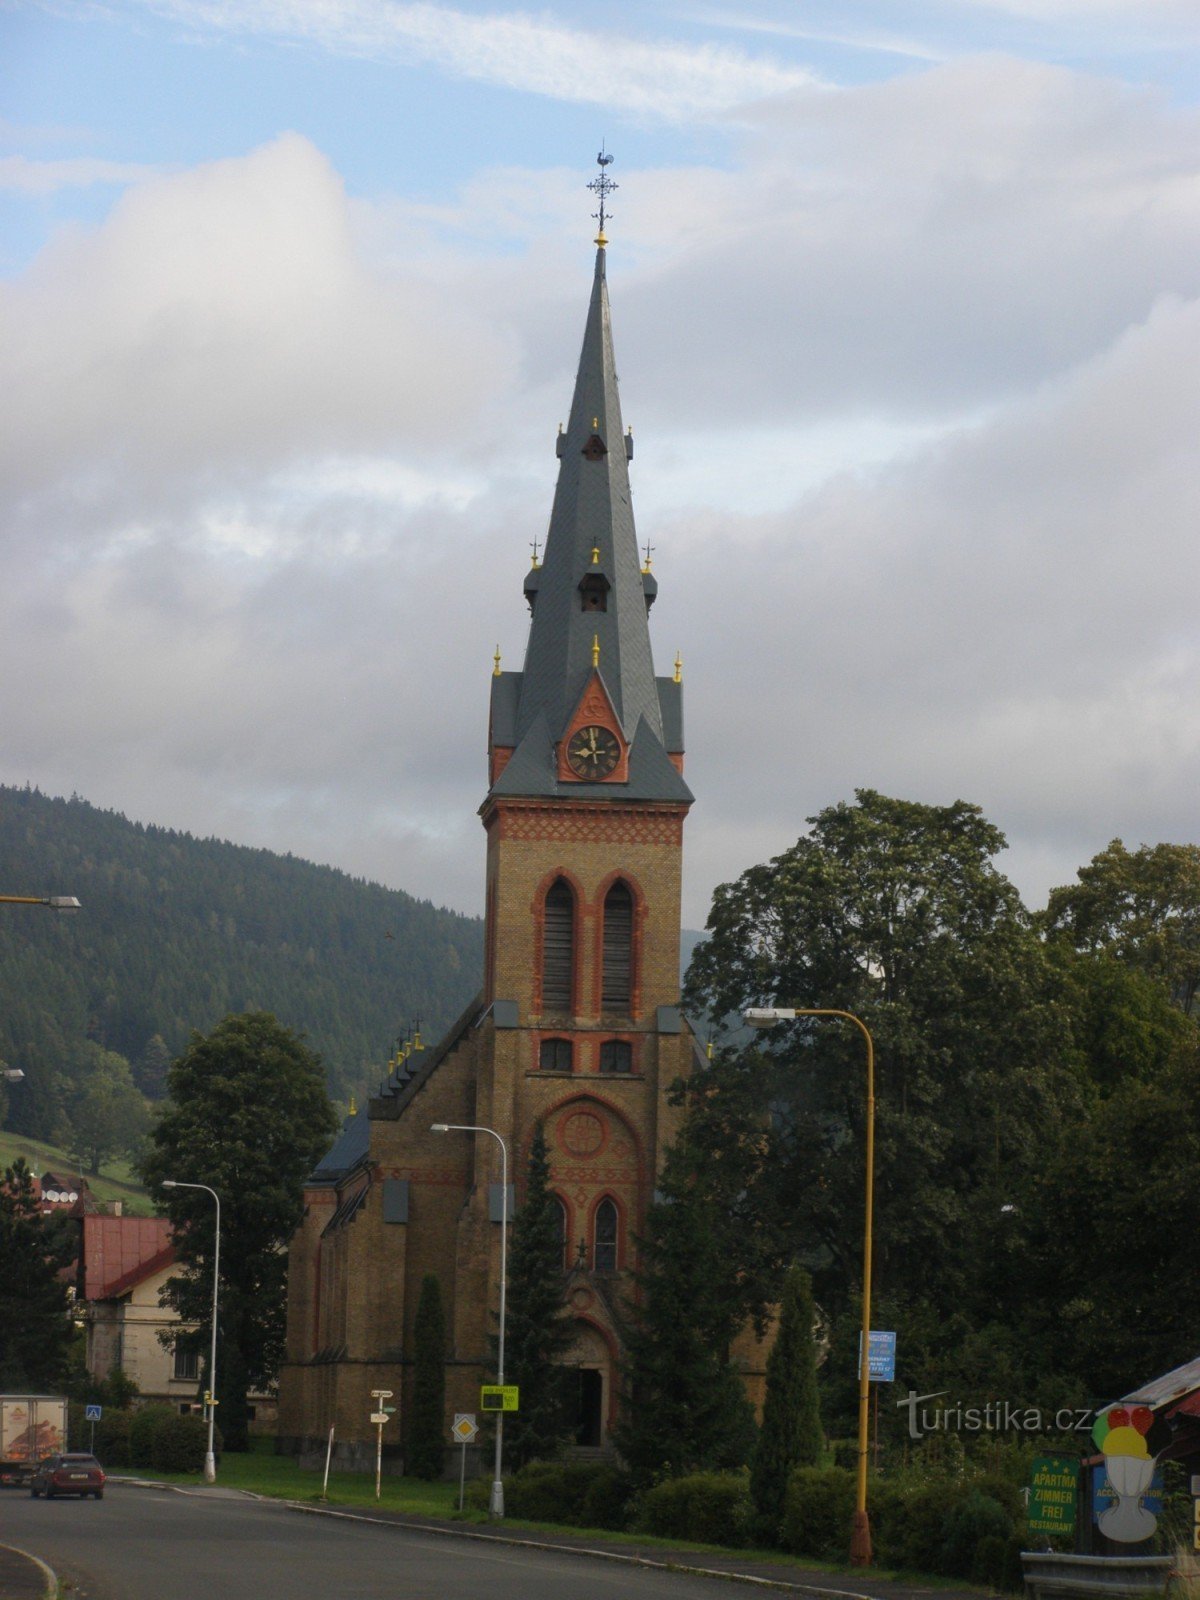 Horní Maršov - Church of the Assumption of the Virgin Mary